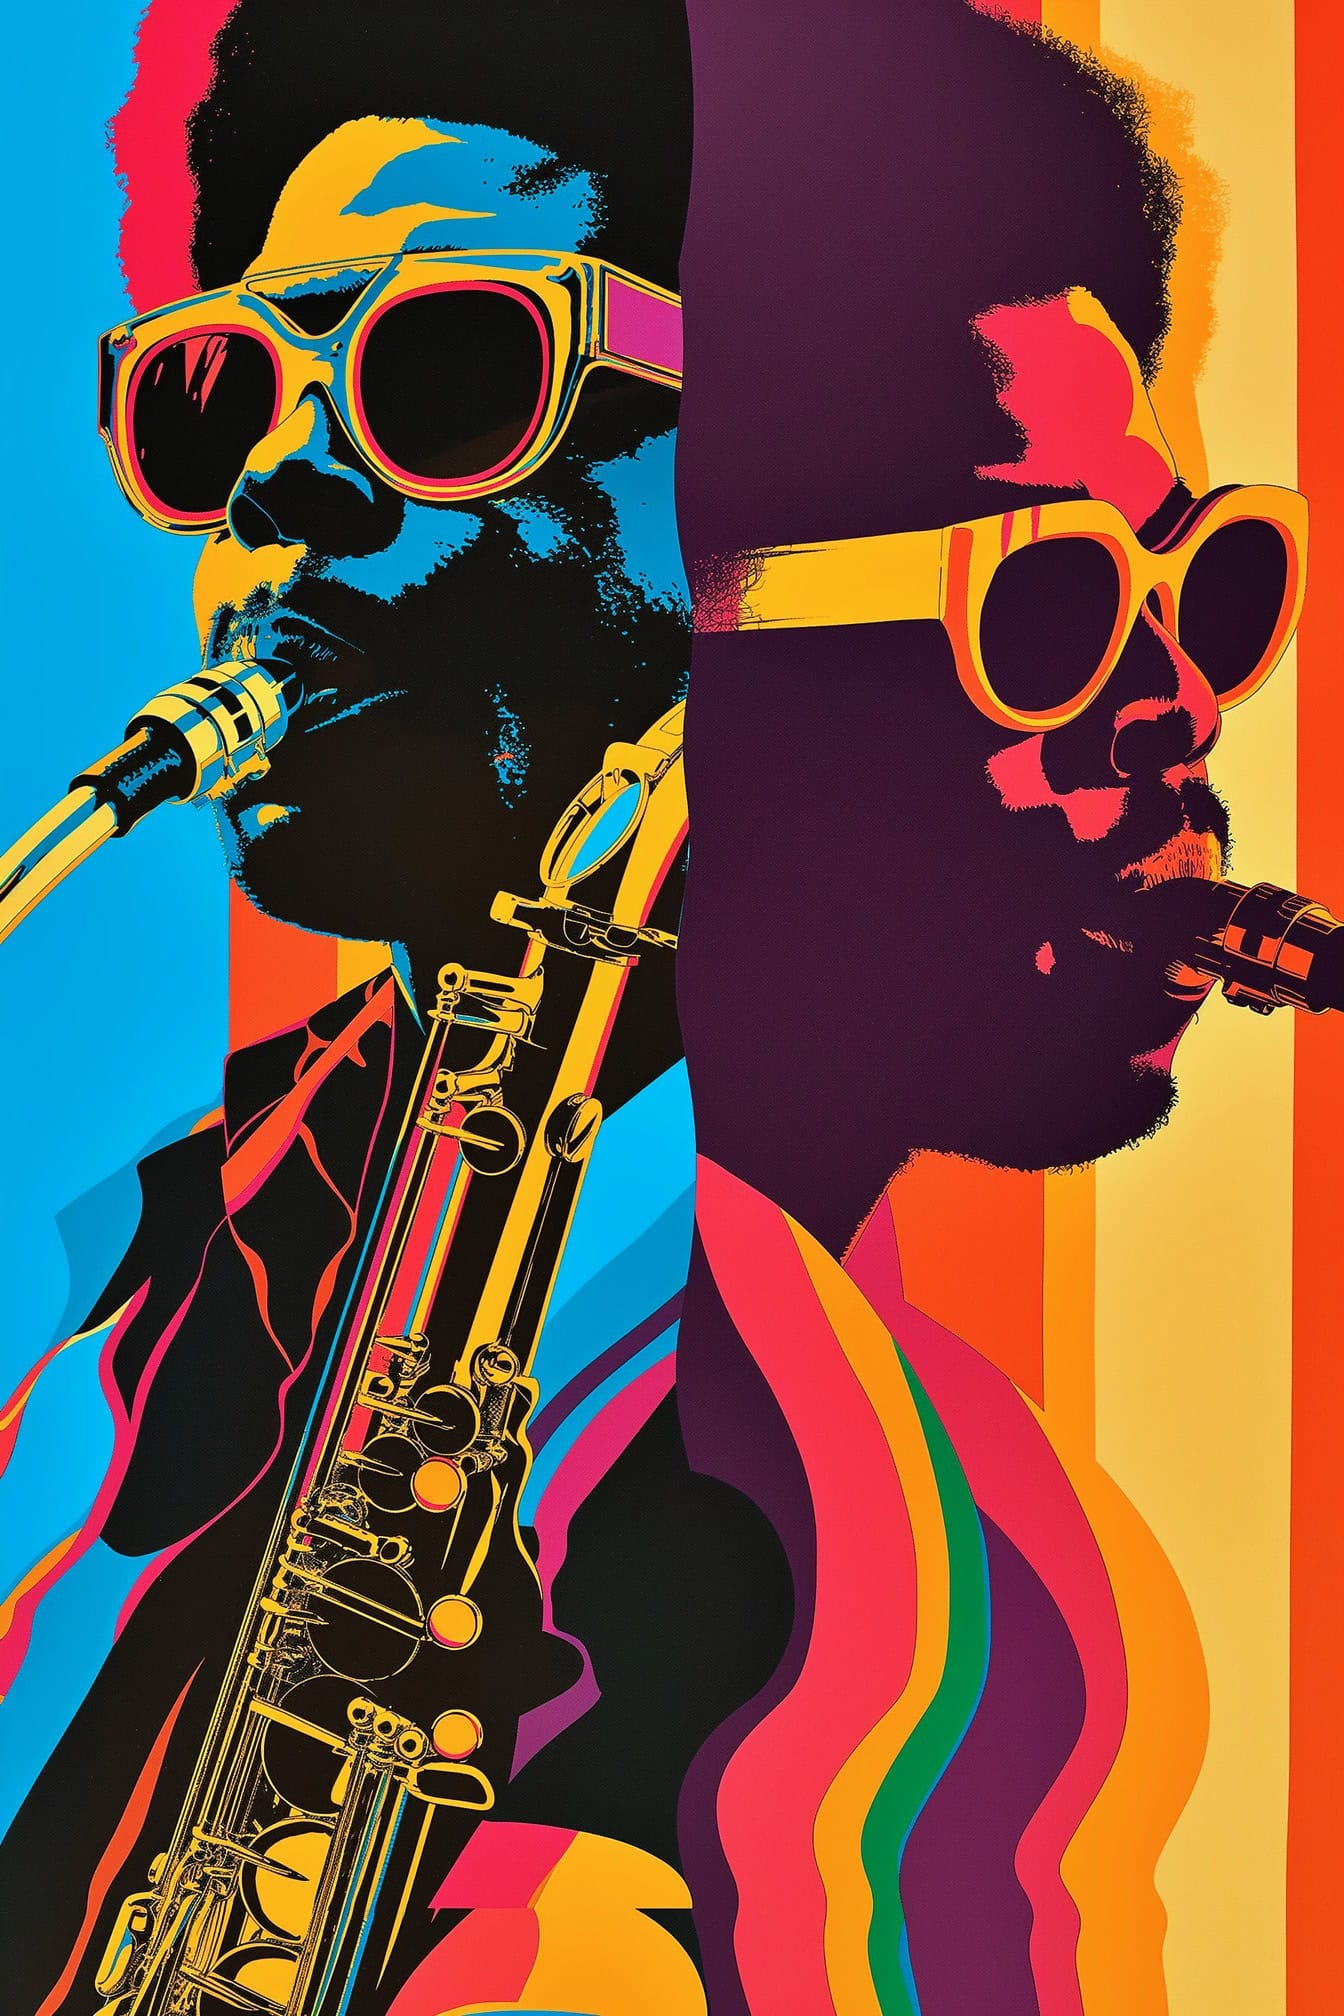 Αφίσα που γιορτάζει την αφροαμερικανική μουσική κουλτούρα με δύο μουσικούς της τζαζ με γυαλιά ηλίου και σαξόφωνο